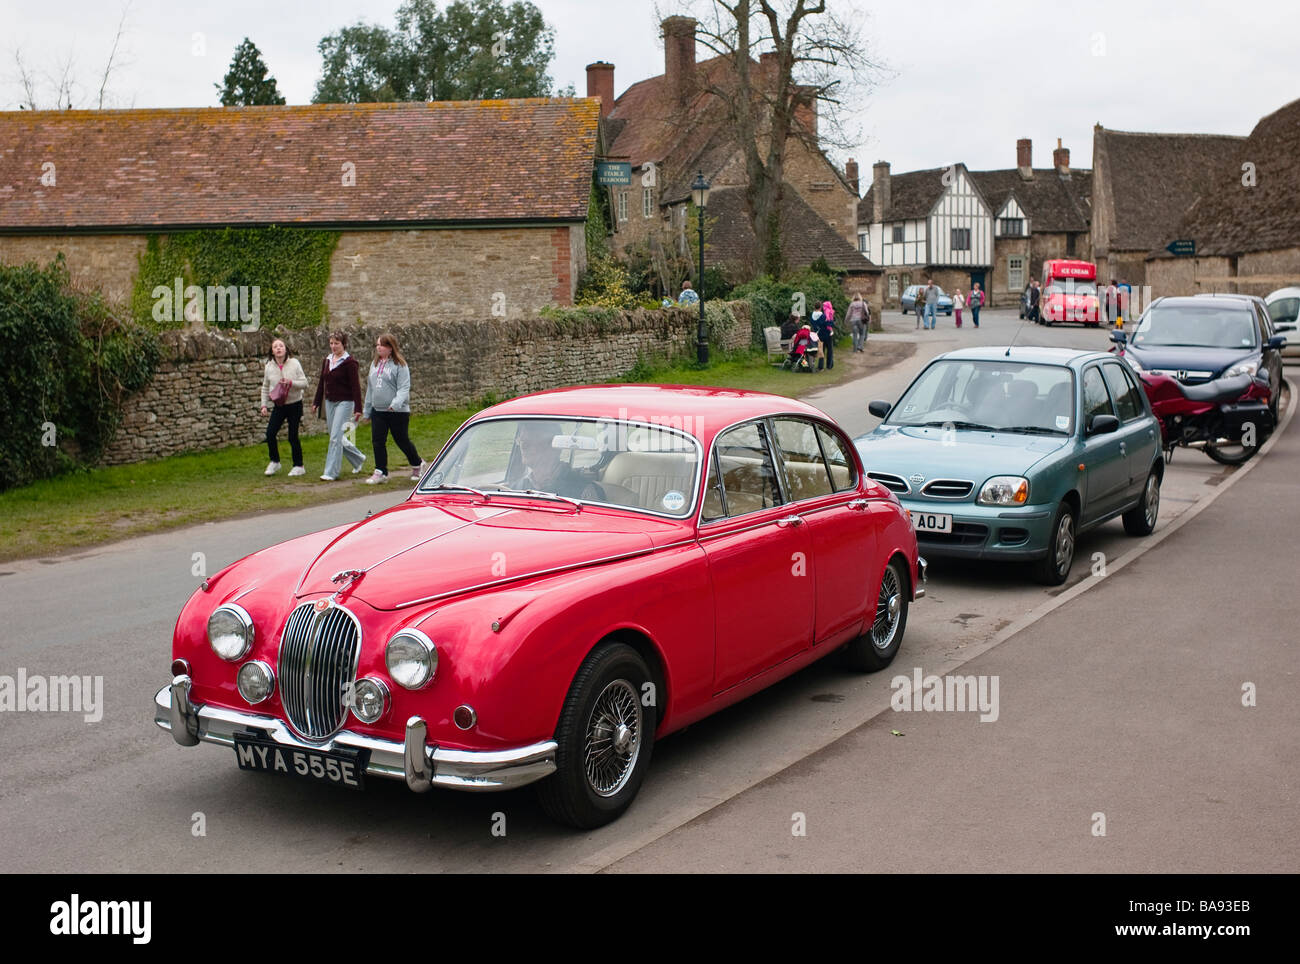 1960 Jaguar Mk2 34 salon de voiture garée dans Wiltshire Lacock Angleterre UK UE Banque D'Images